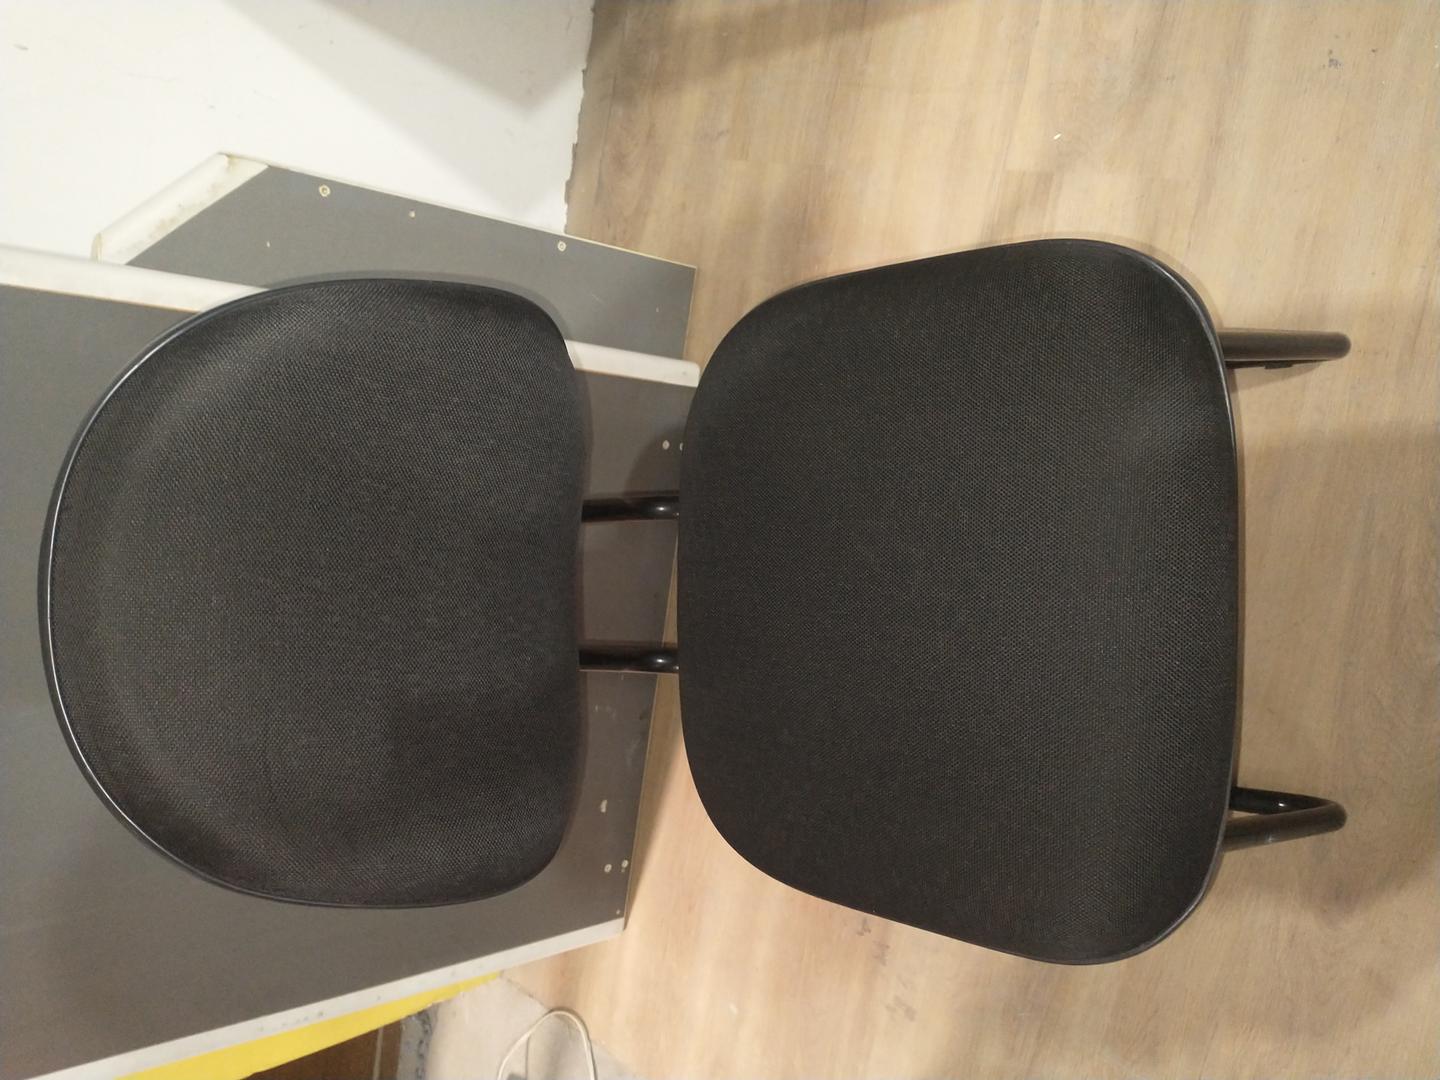 Cadeira fixa estofada s/ braços em Estofado / Aço Preto 90 cm x 48 cm x 50 cm